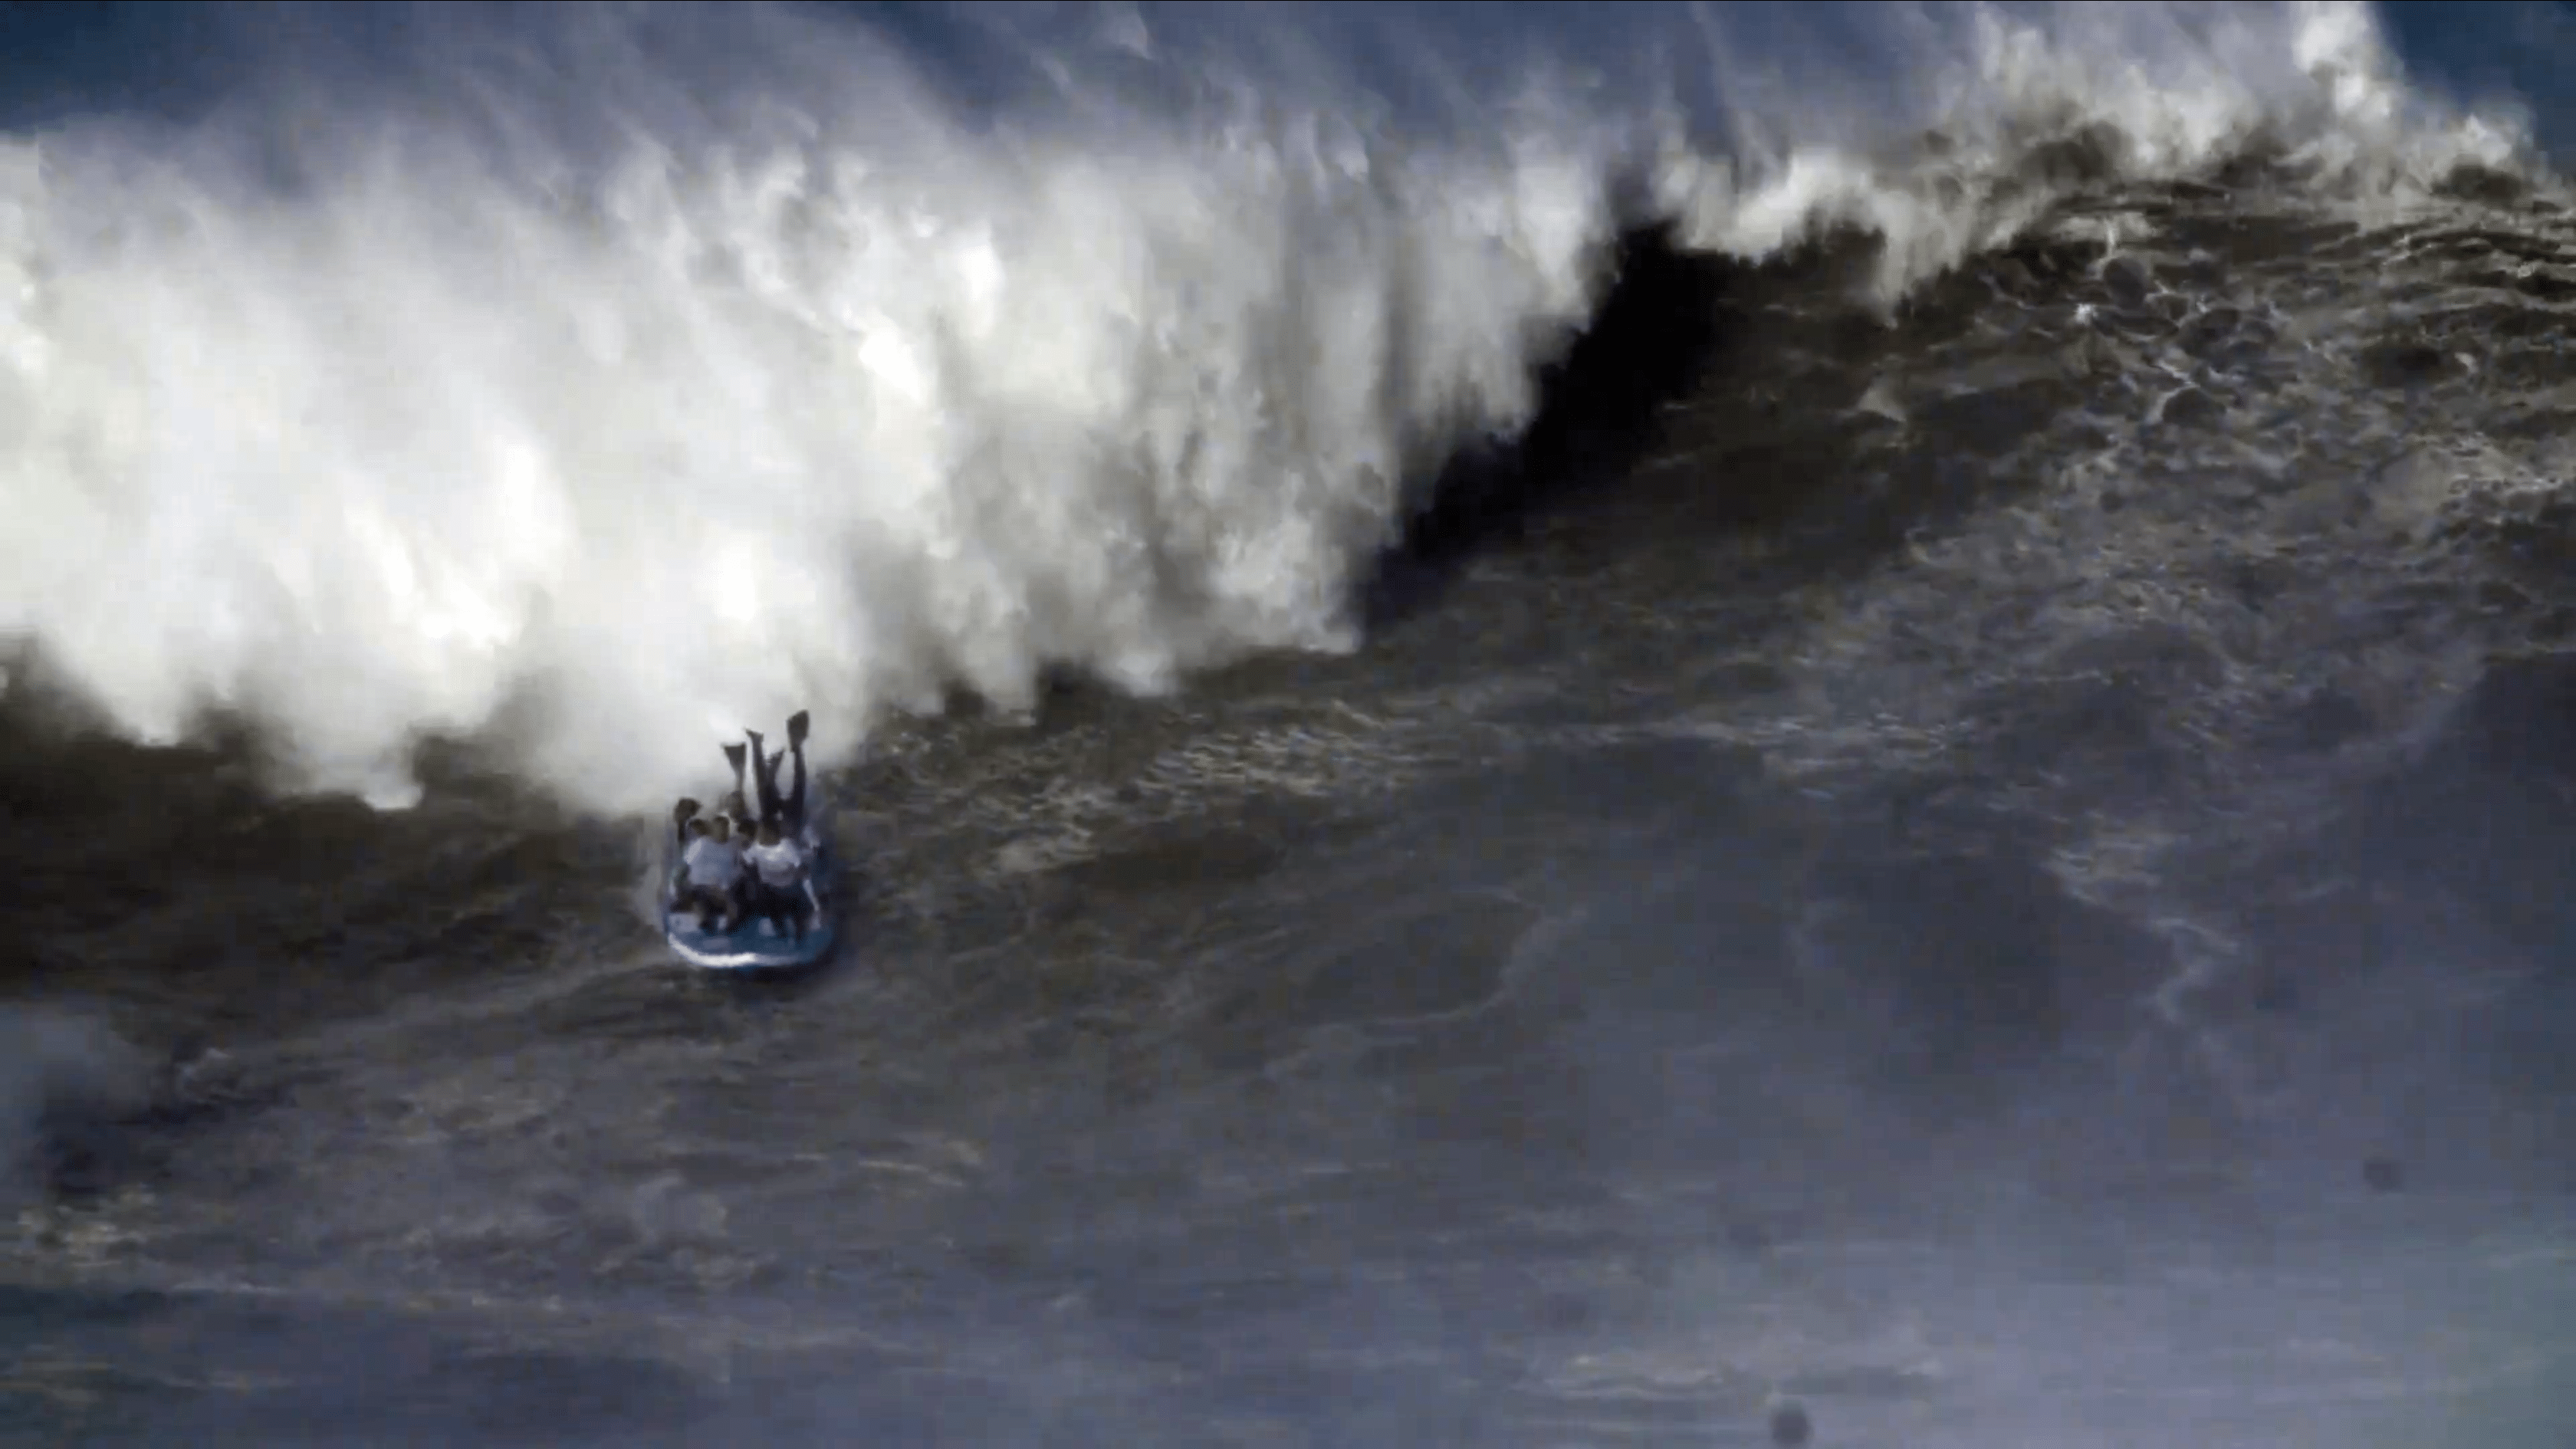 Le Big Sup d’Anonym surf la vague monstrueuse de Nazaré